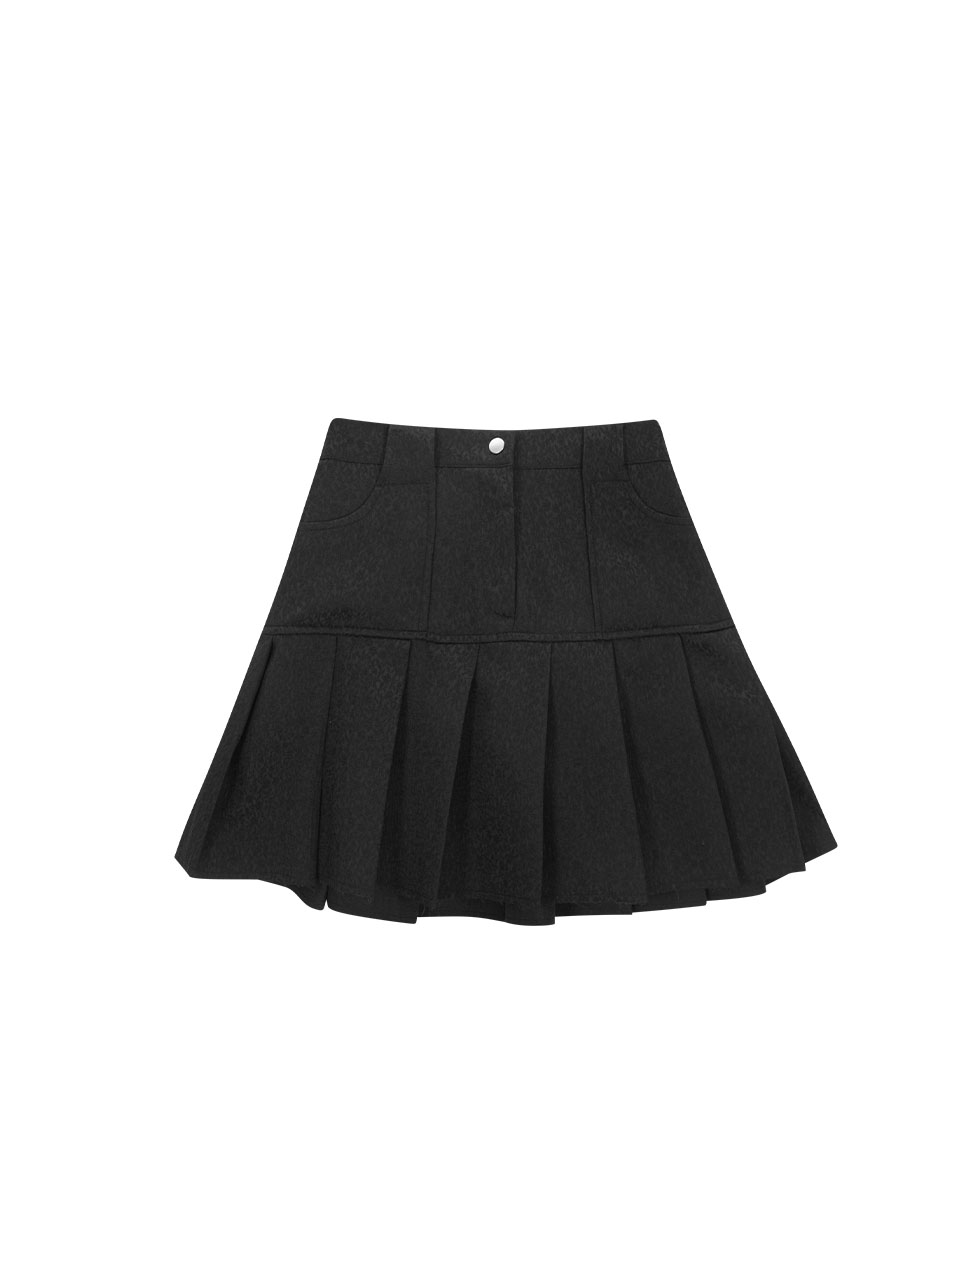 Jacquard Pleated Skirt - Black